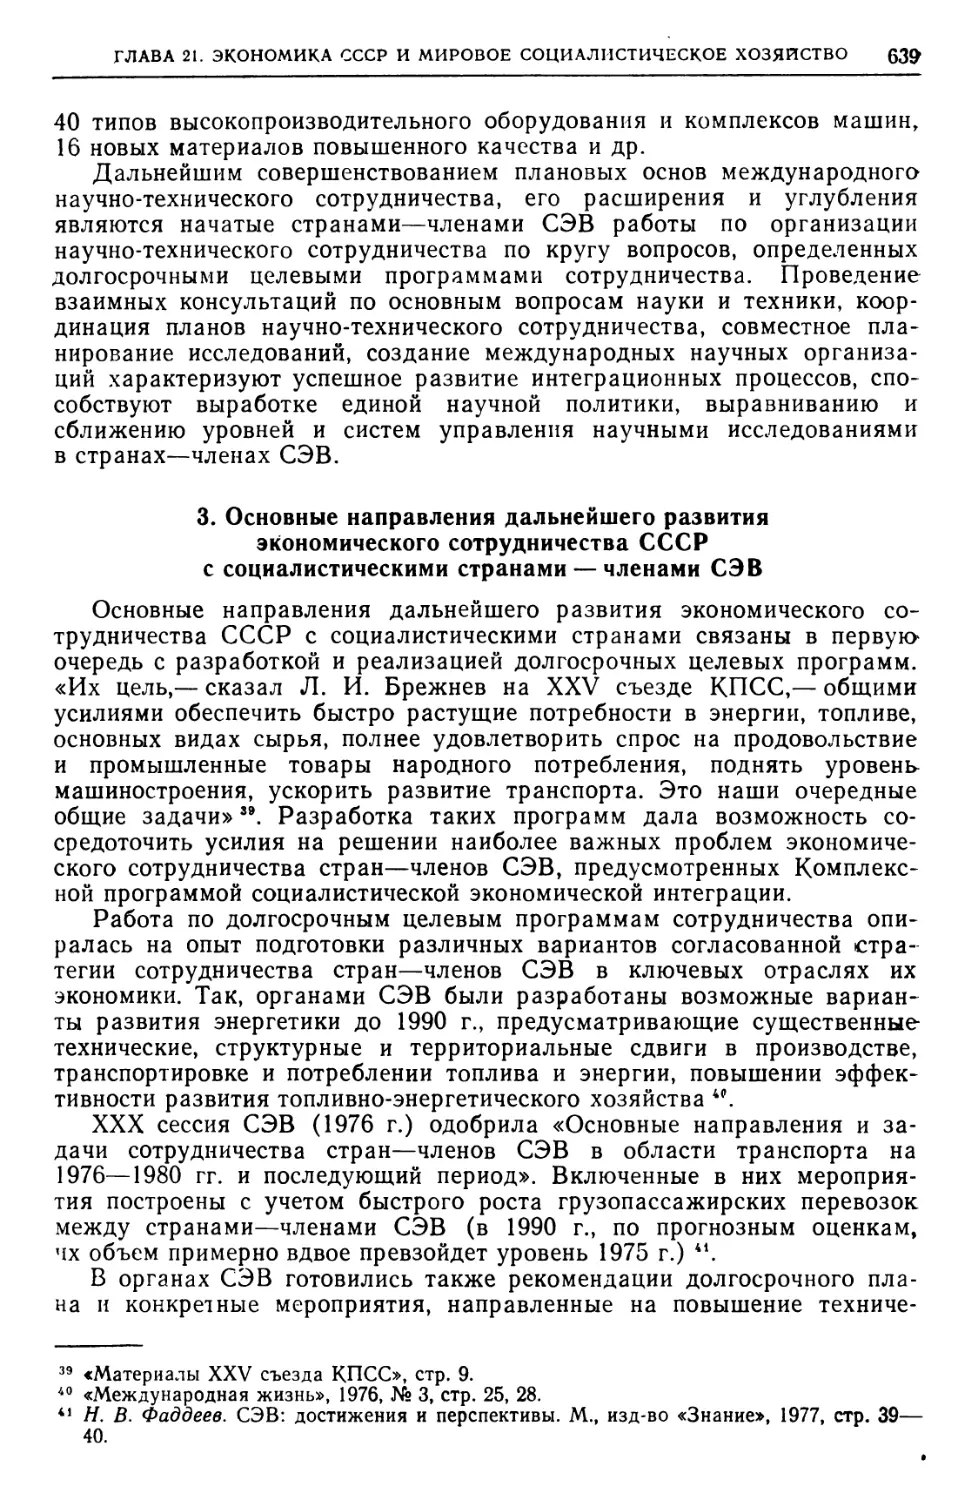 3. Основные направления дальнейшего развития экономического сотрудничества СССР с социалистическими странами — членами СЭВ